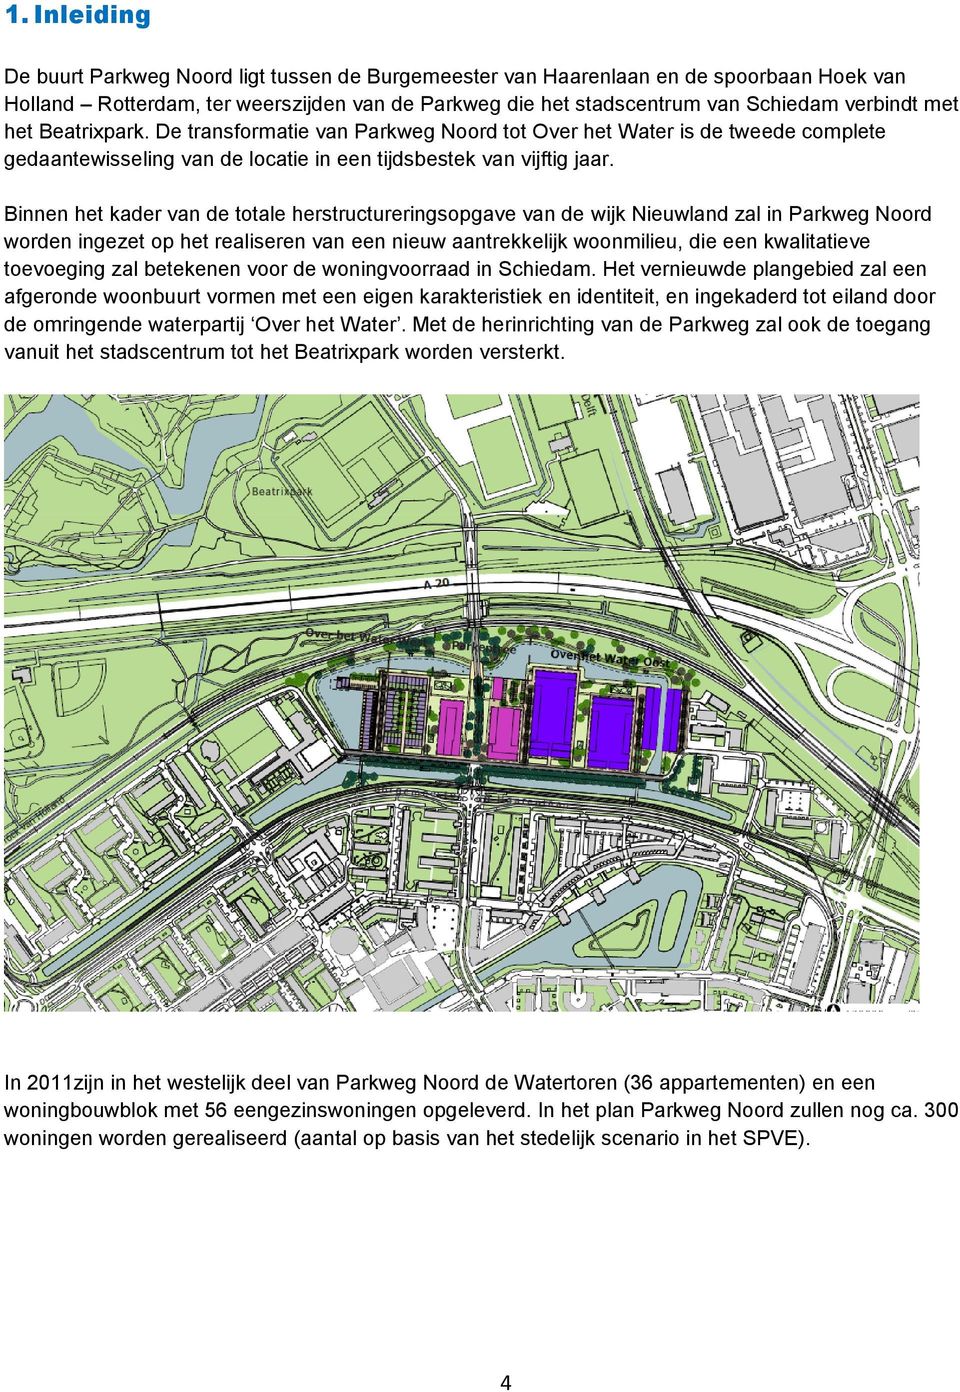 Binnen het kader van de totale herstructureringsopgave van de wijk Nieuwland zal in Parkweg Noord worden ingezet op het realiseren van een nieuw aantrekkelijk woonmilieu, die een kwalitatieve